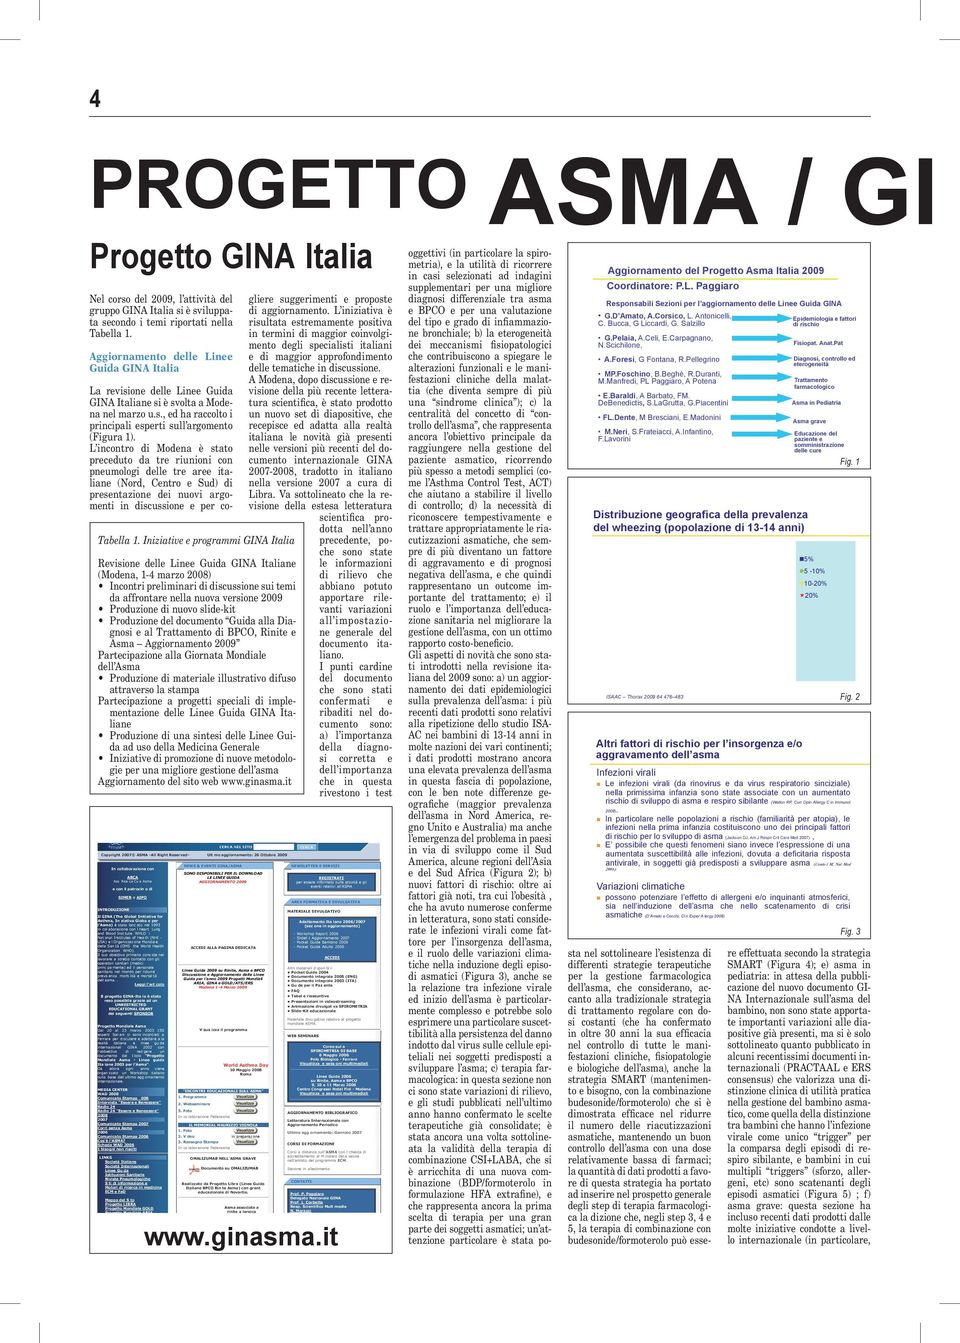 Iniziative e programmi GINA Italia Revisione delle Linee Guida GINA Italiane (Modena, 1-4 marzo 2008) Incontri preliminari di discussione sui temi da affrontare nella nuova versione 2009 Produzione